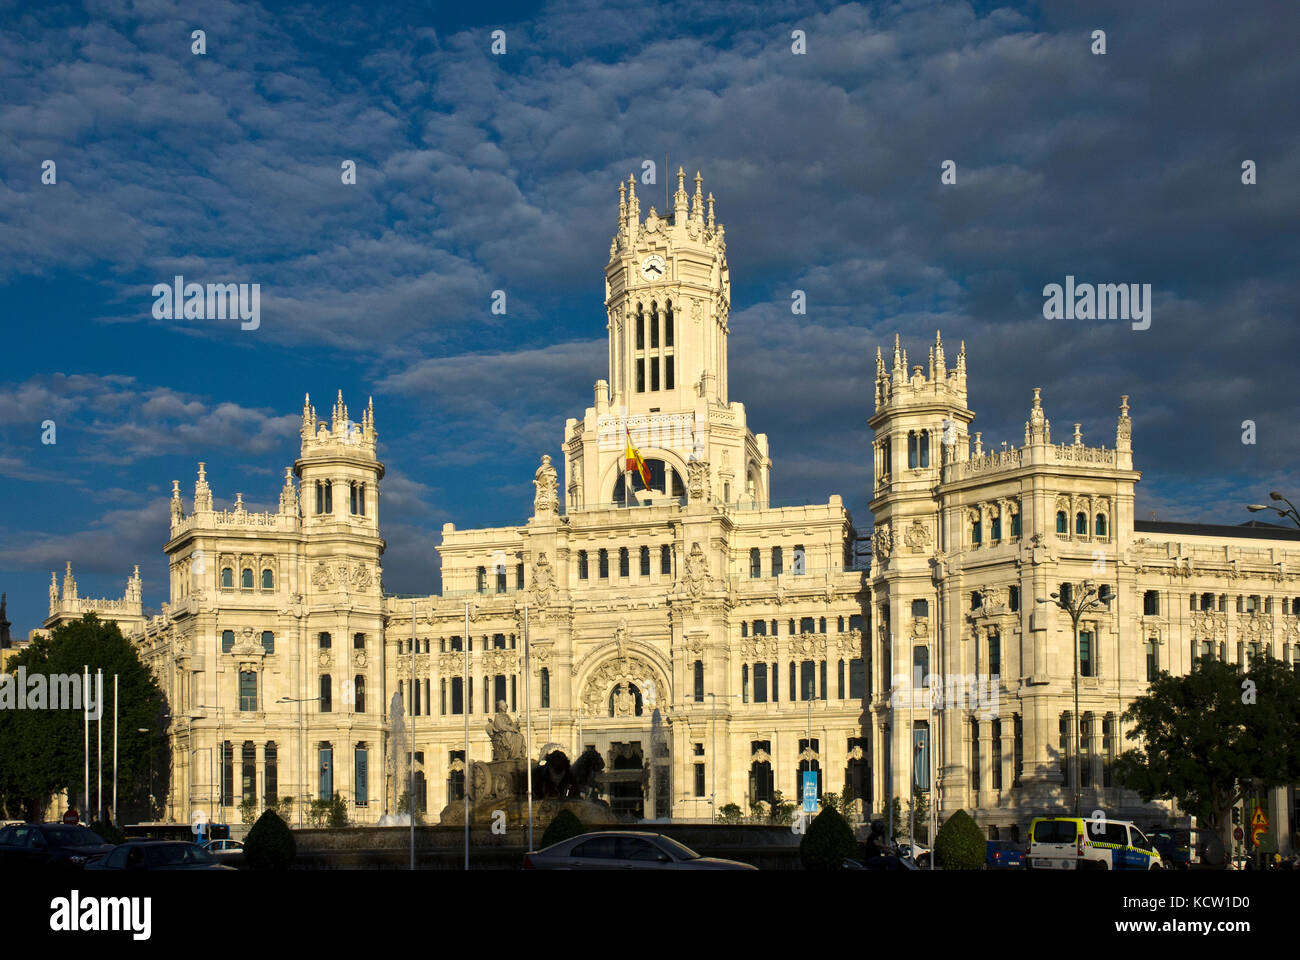 Madrid City Hall (Cibeles Palace) facade Stock Photo